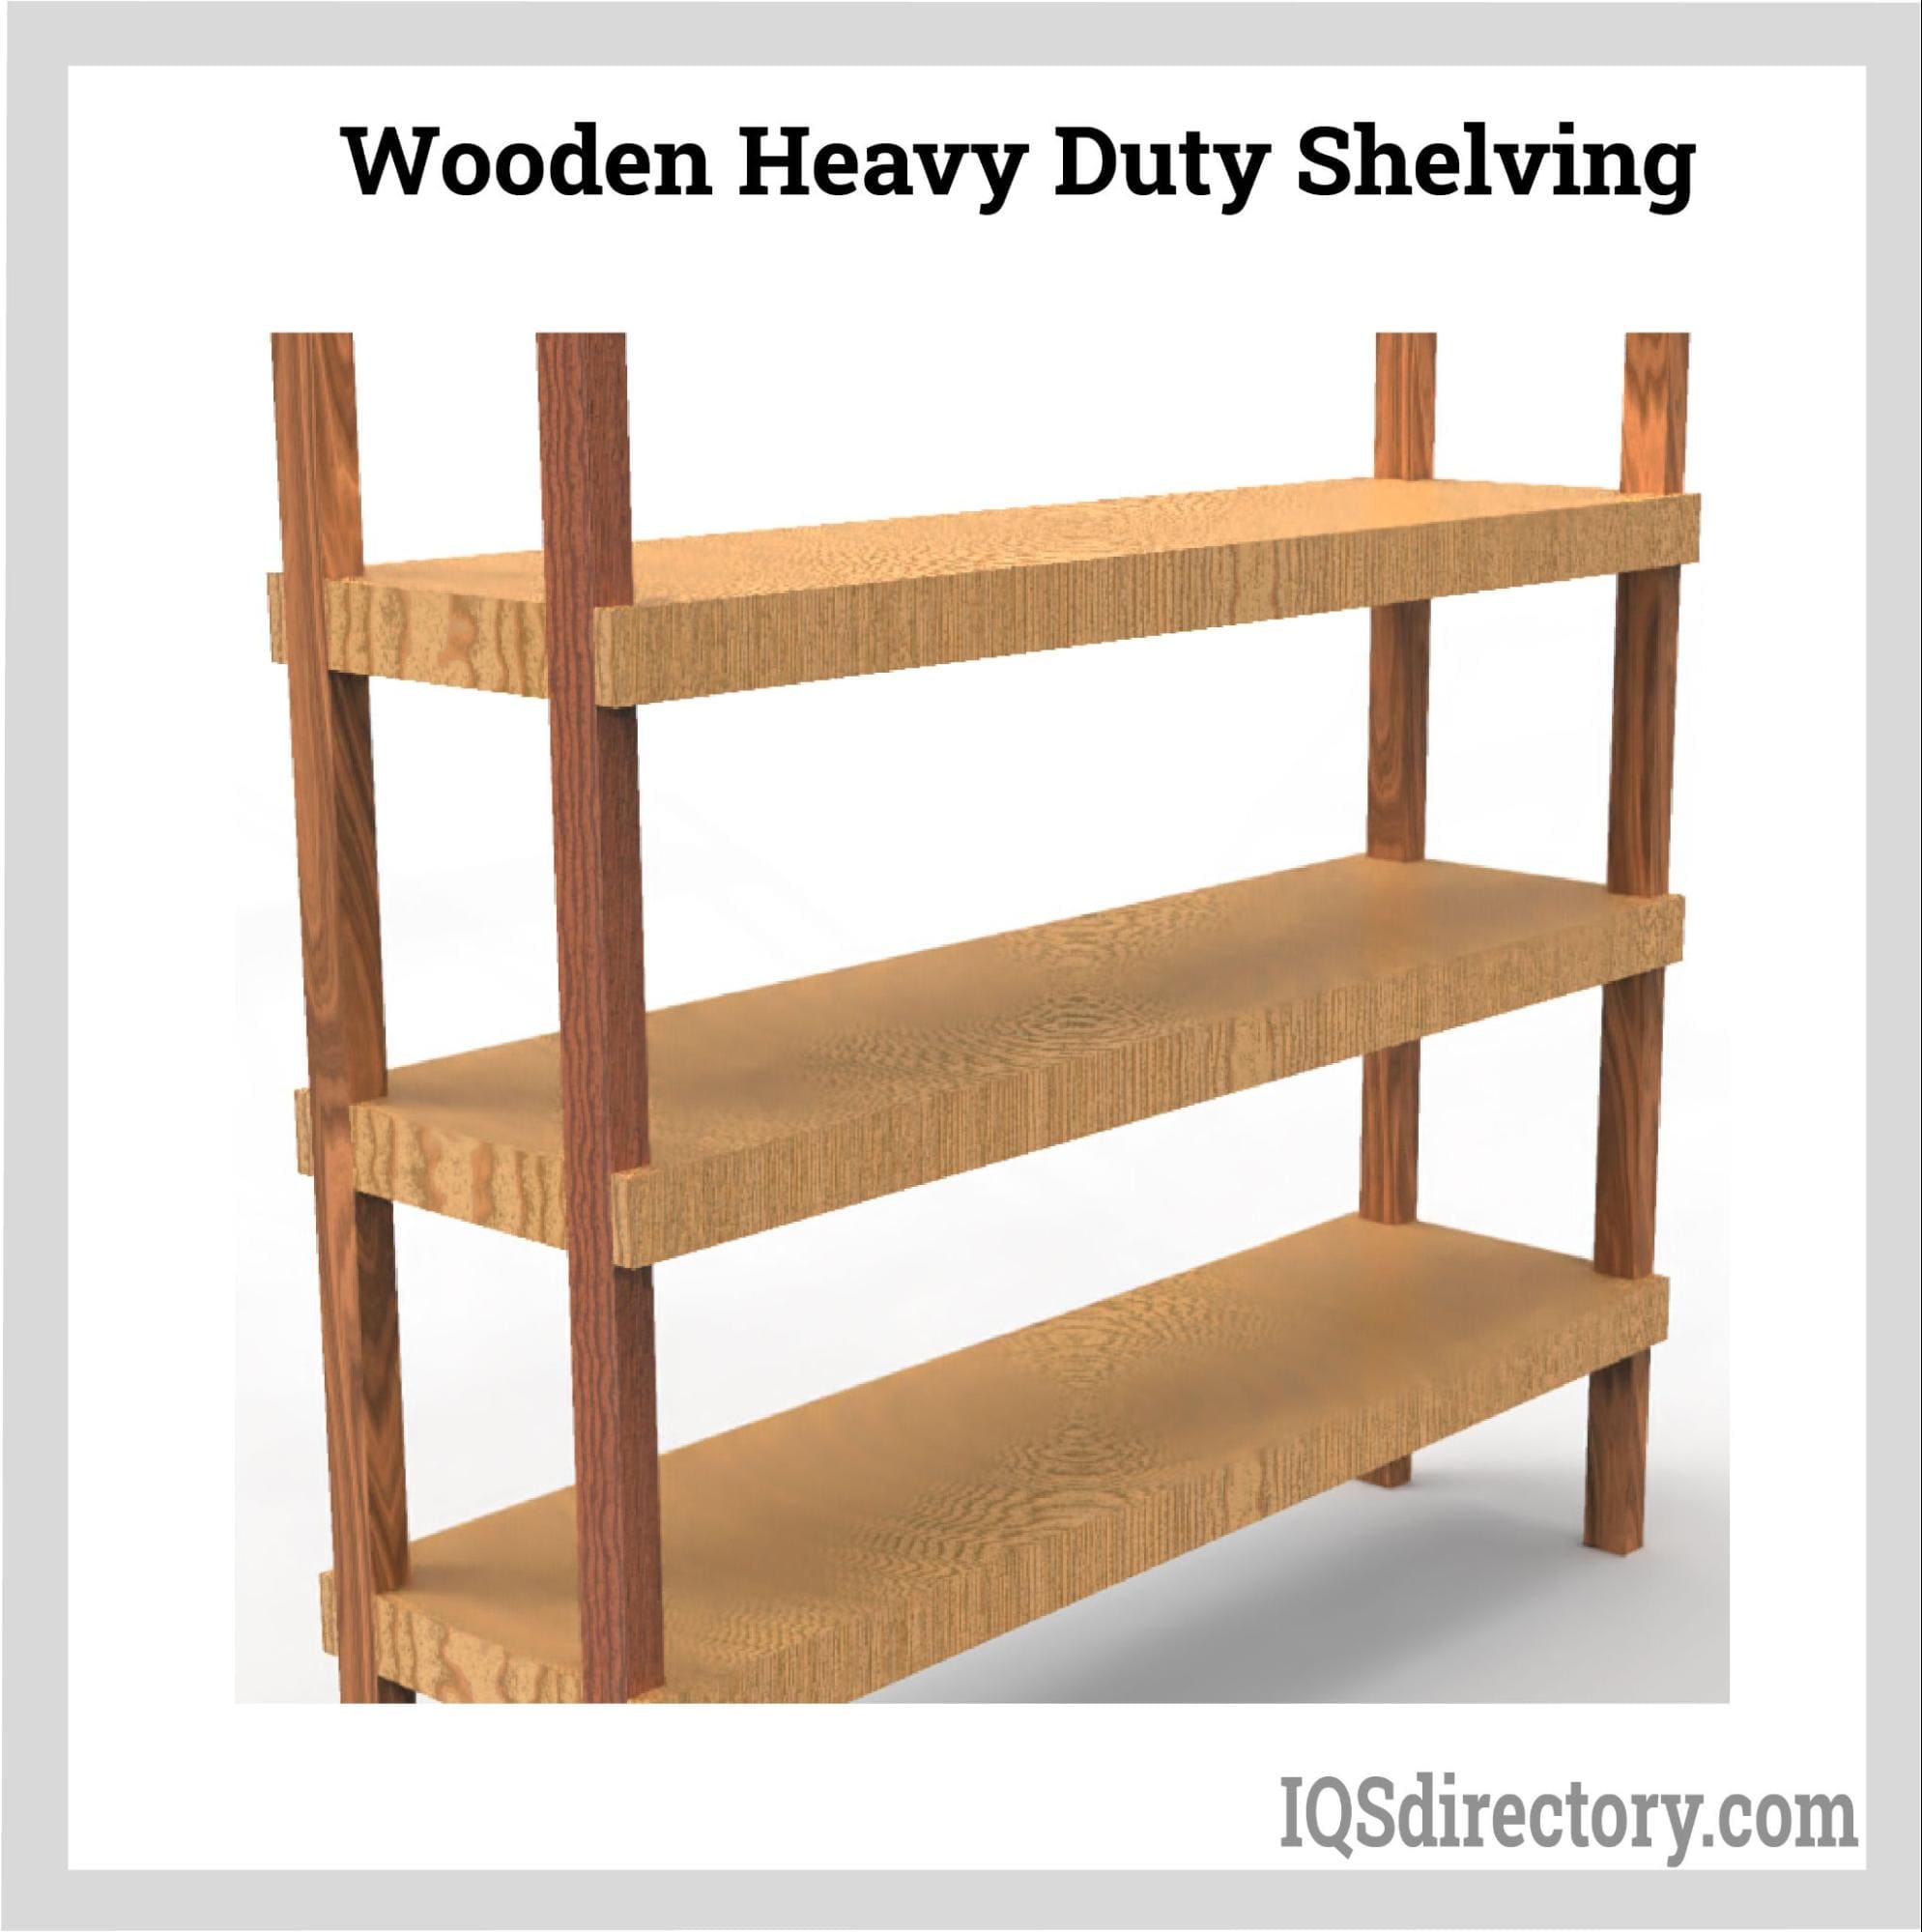 Wooden Heavy Duty Shelving